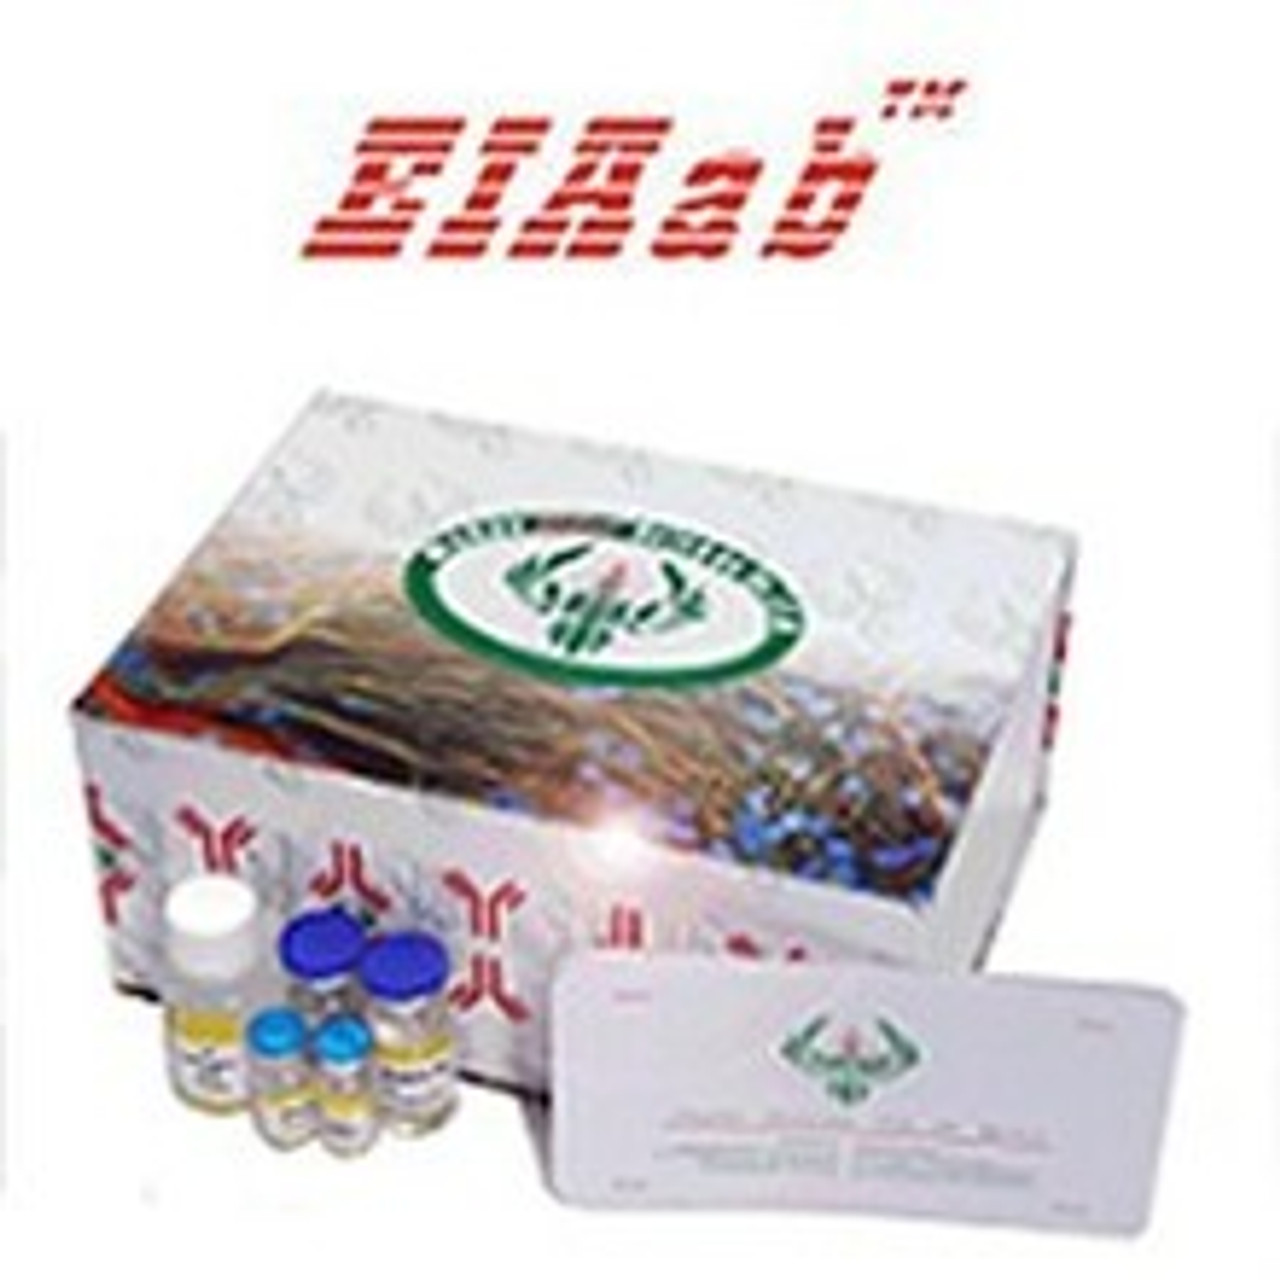 General 5METHF/Levomefolic acid ELISA Kit